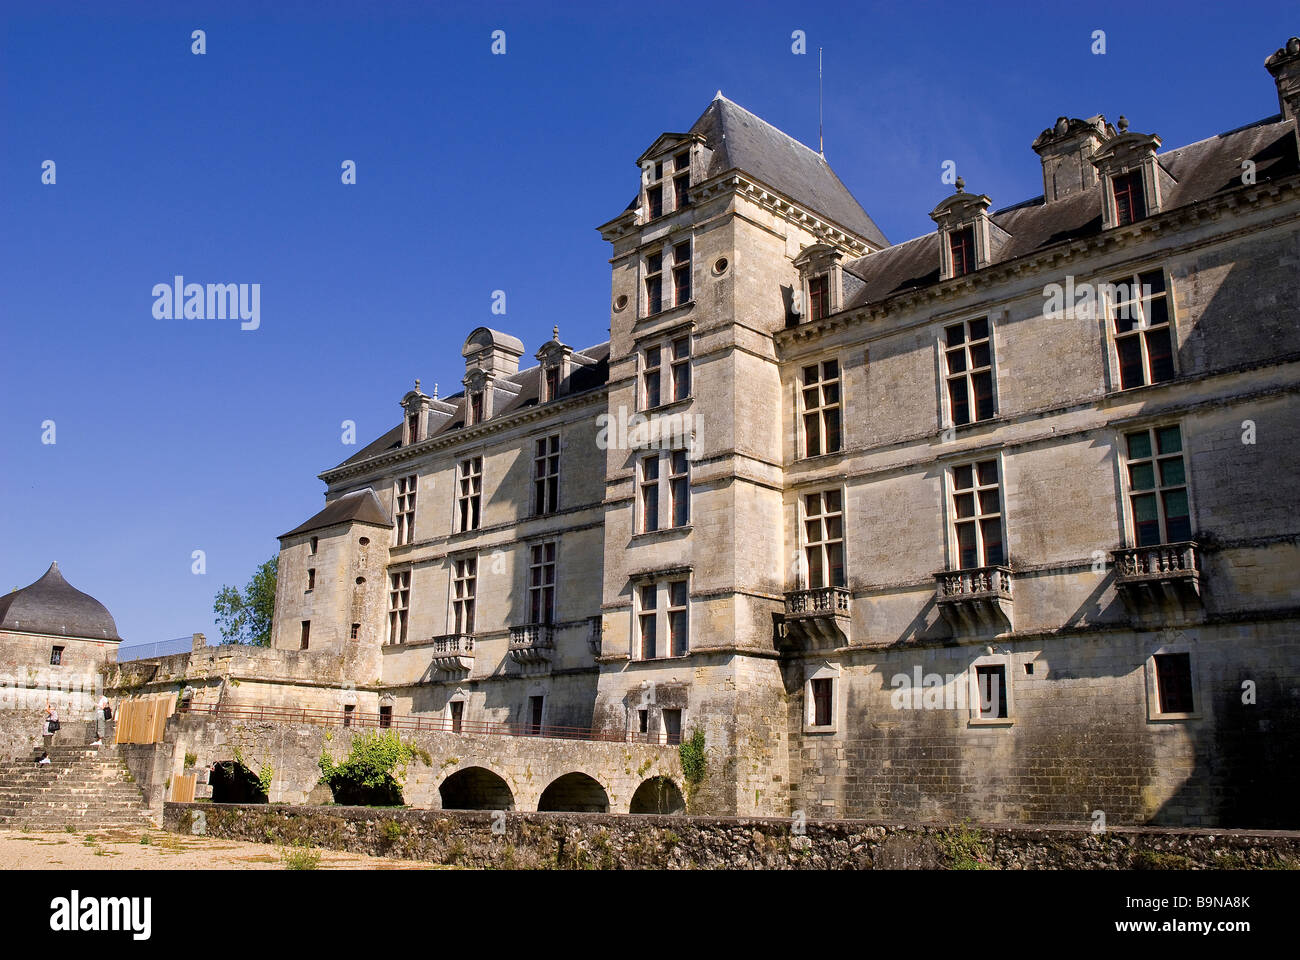 France, Gironde, entre deux mers (entre les rivières Garonne et Dordogne), la bastide de Cadillac, château des ducs d'Épernon Banque D'Images